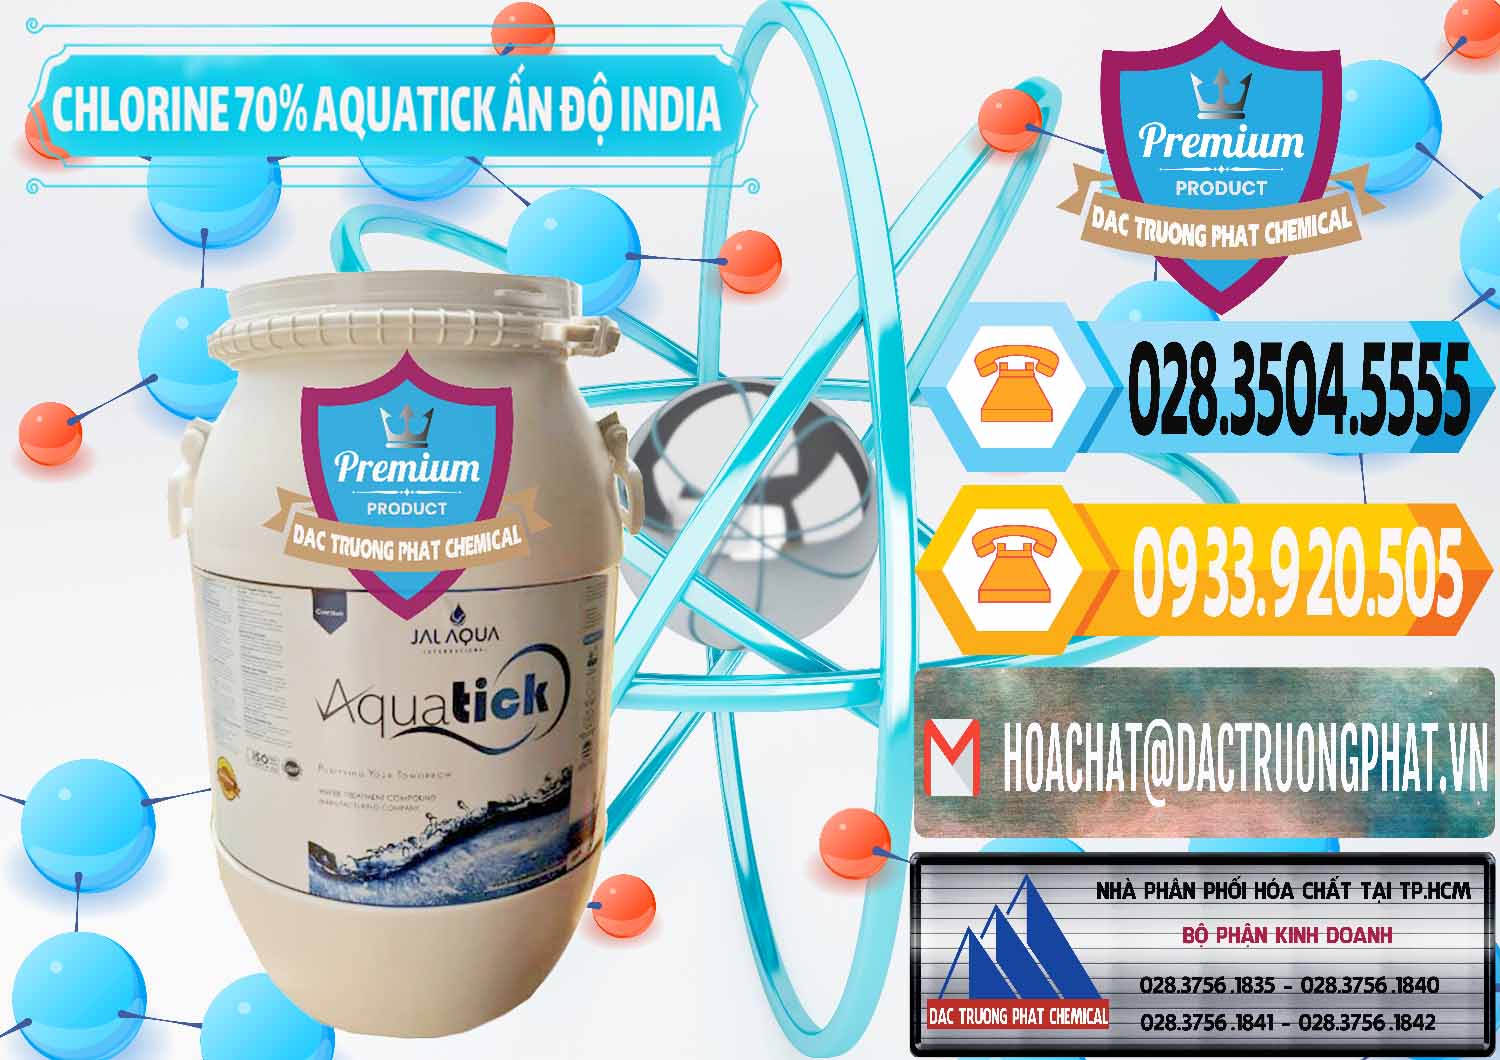 Đơn vị chuyên kinh doanh ( bán ) Chlorine – Clorin 70% Aquatick Jal Aqua Ấn Độ India - 0215 - Cty kinh doanh & cung cấp hóa chất tại TP.HCM - hoachattayrua.net